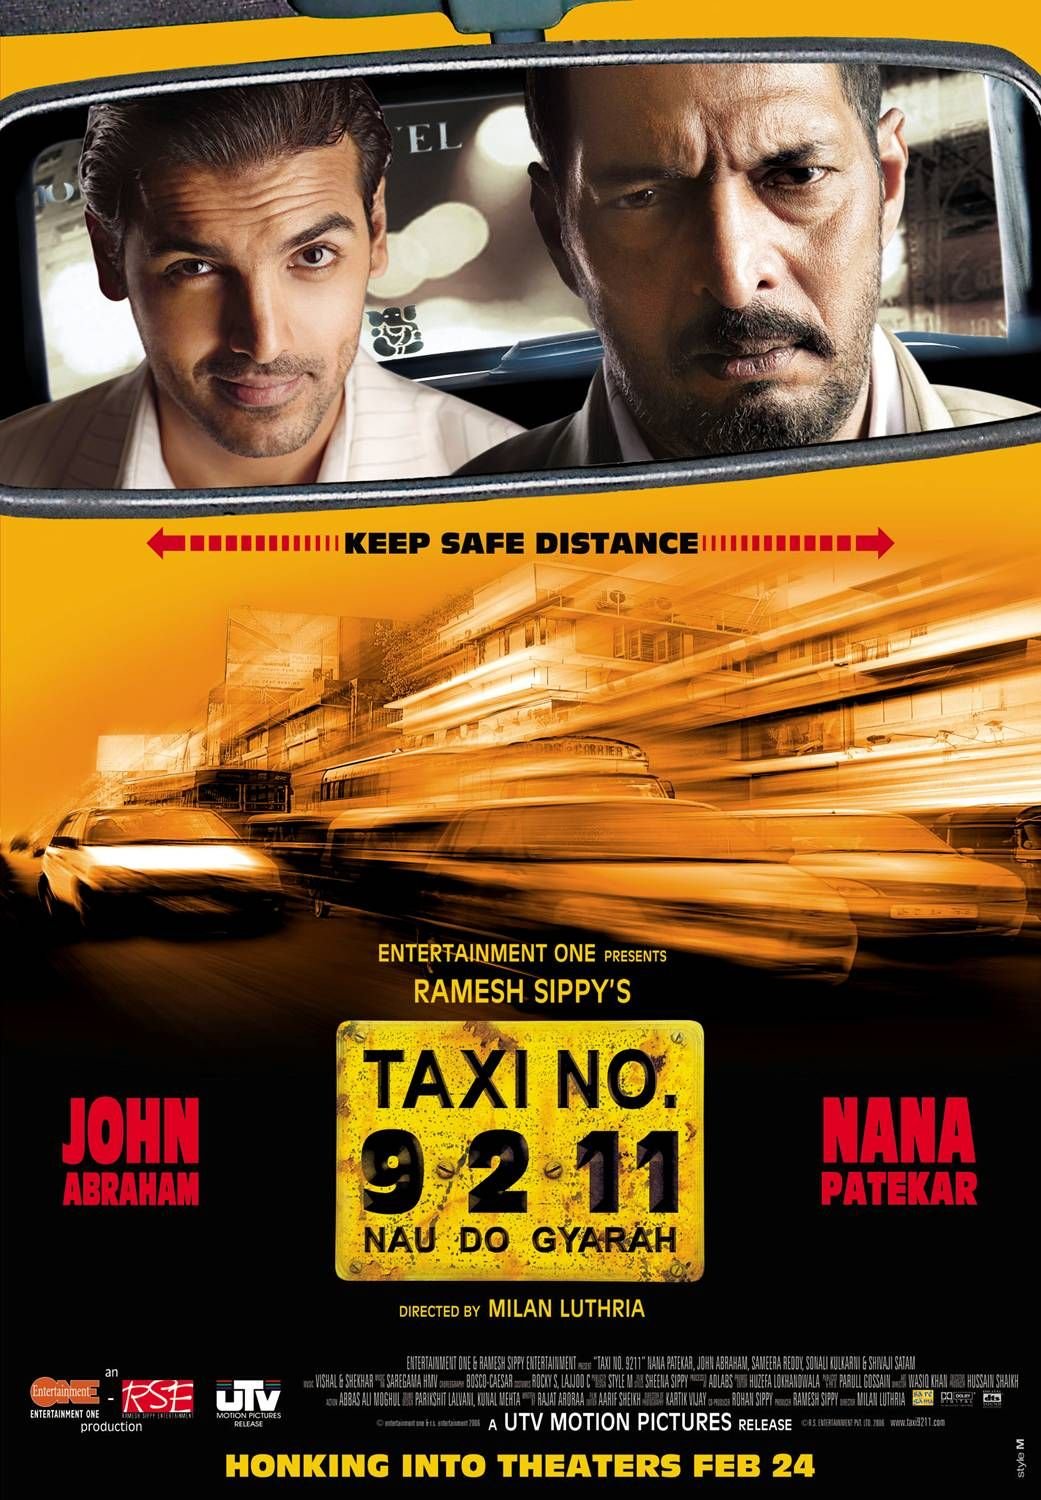 Песня из кинофильма такси. Taxi no. 9 2 11: nau do Gyarah, 2006. Сами Насери такси 6.